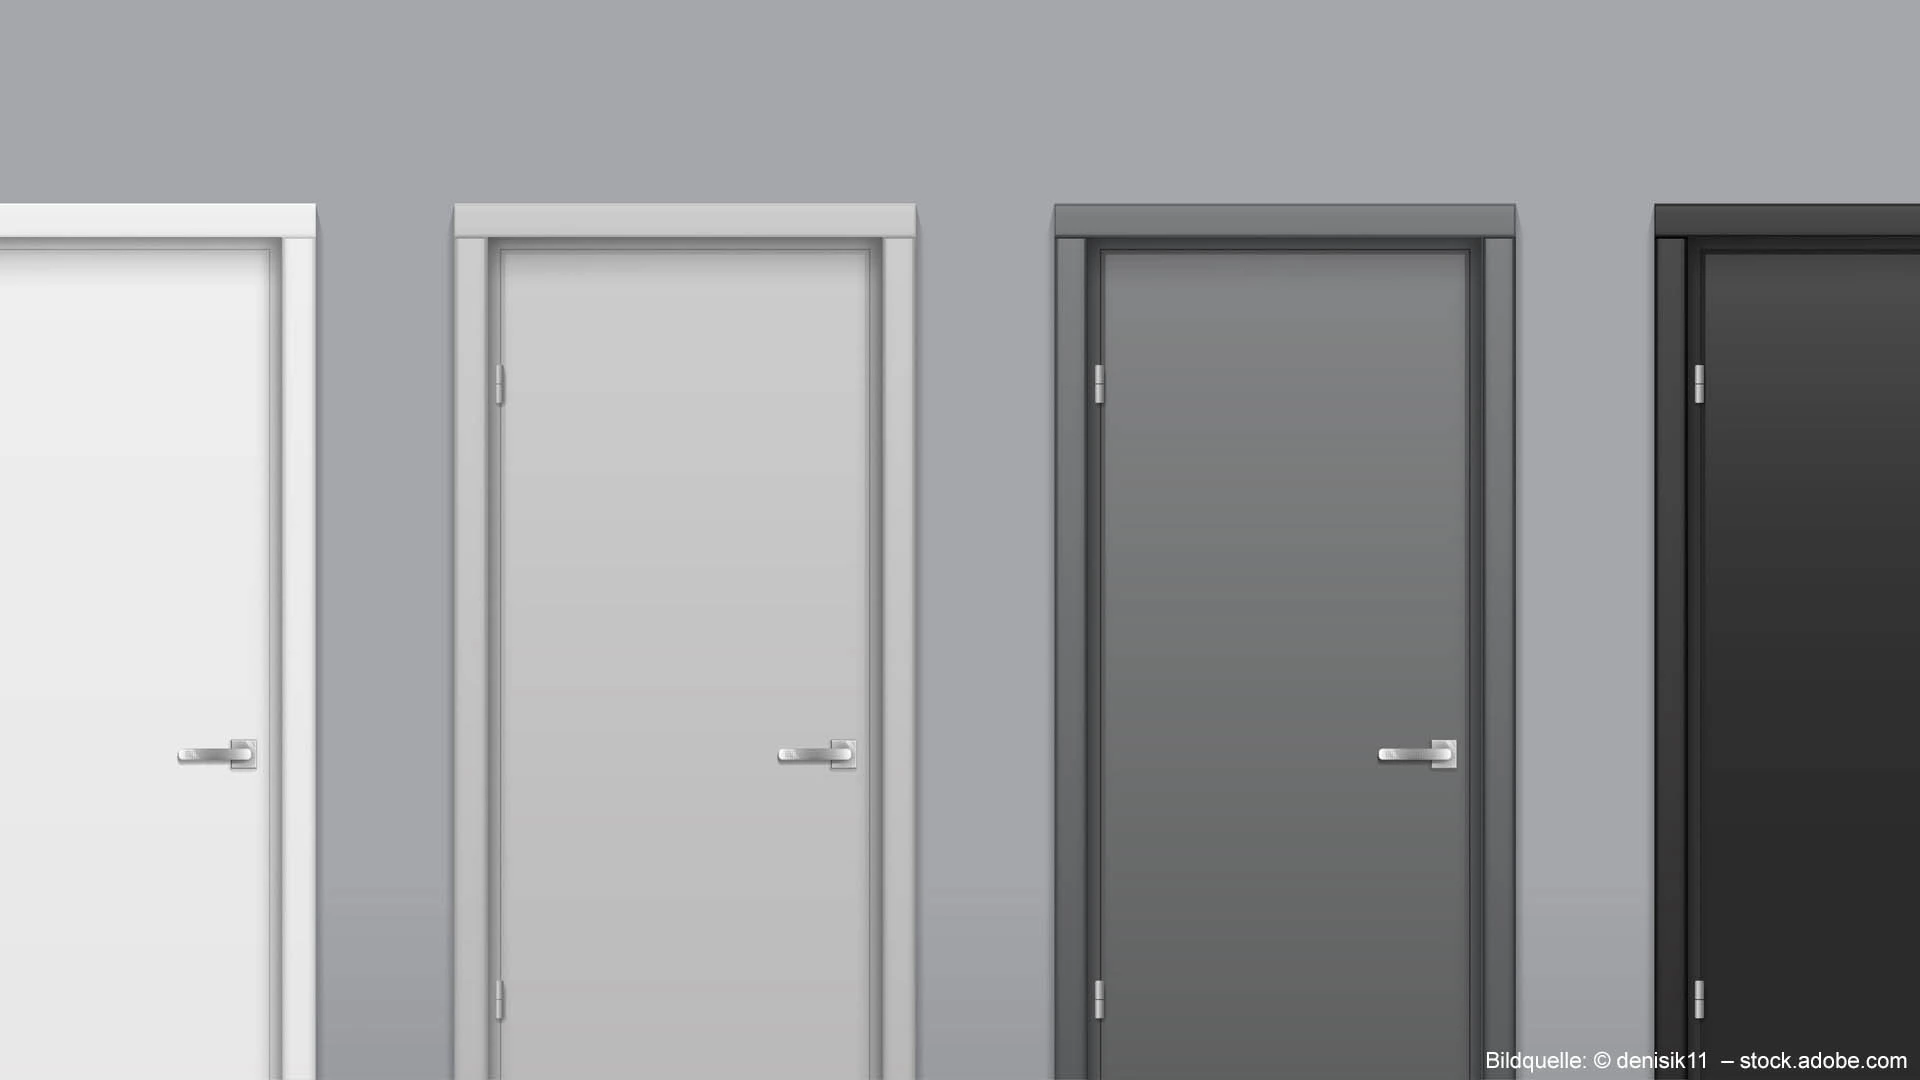 Mehrere Türen nebeneinander in den Farben von weiß bis schwarz